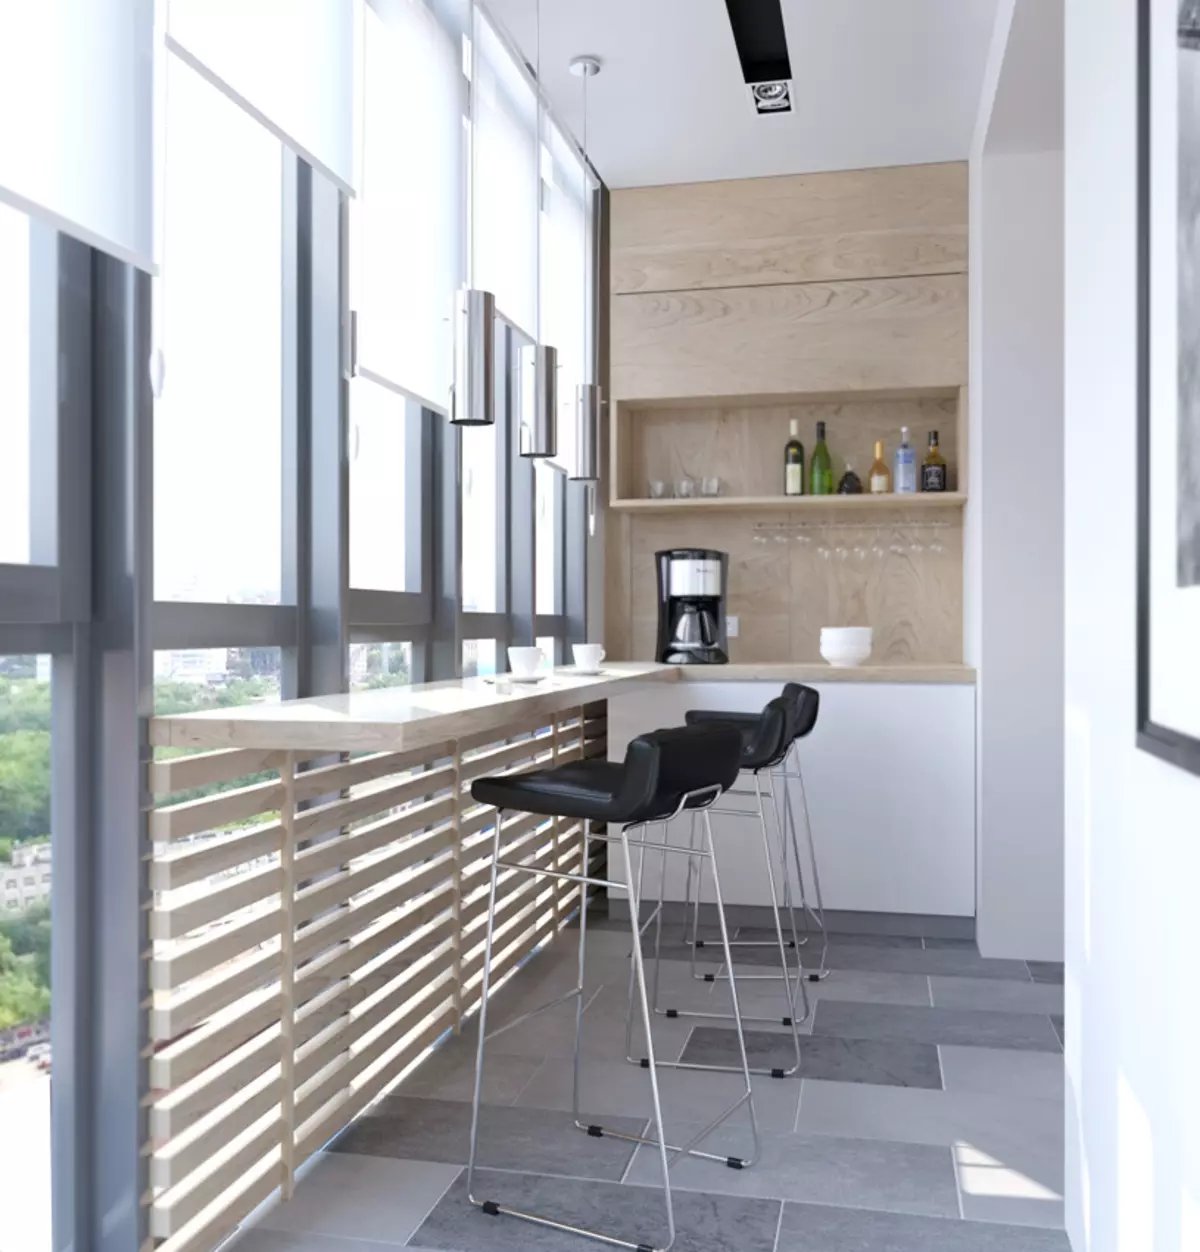 การออกแบบห้องครัว 12 ตร. ม. เมตรมีระเบียง (47 รูป): ความคิดห้องครัว 12 ตารางเมตรพร้อมประตูระเบียงเค้าโครงห้องครัวพร้อมทางเข้าระเบียง 9498_13